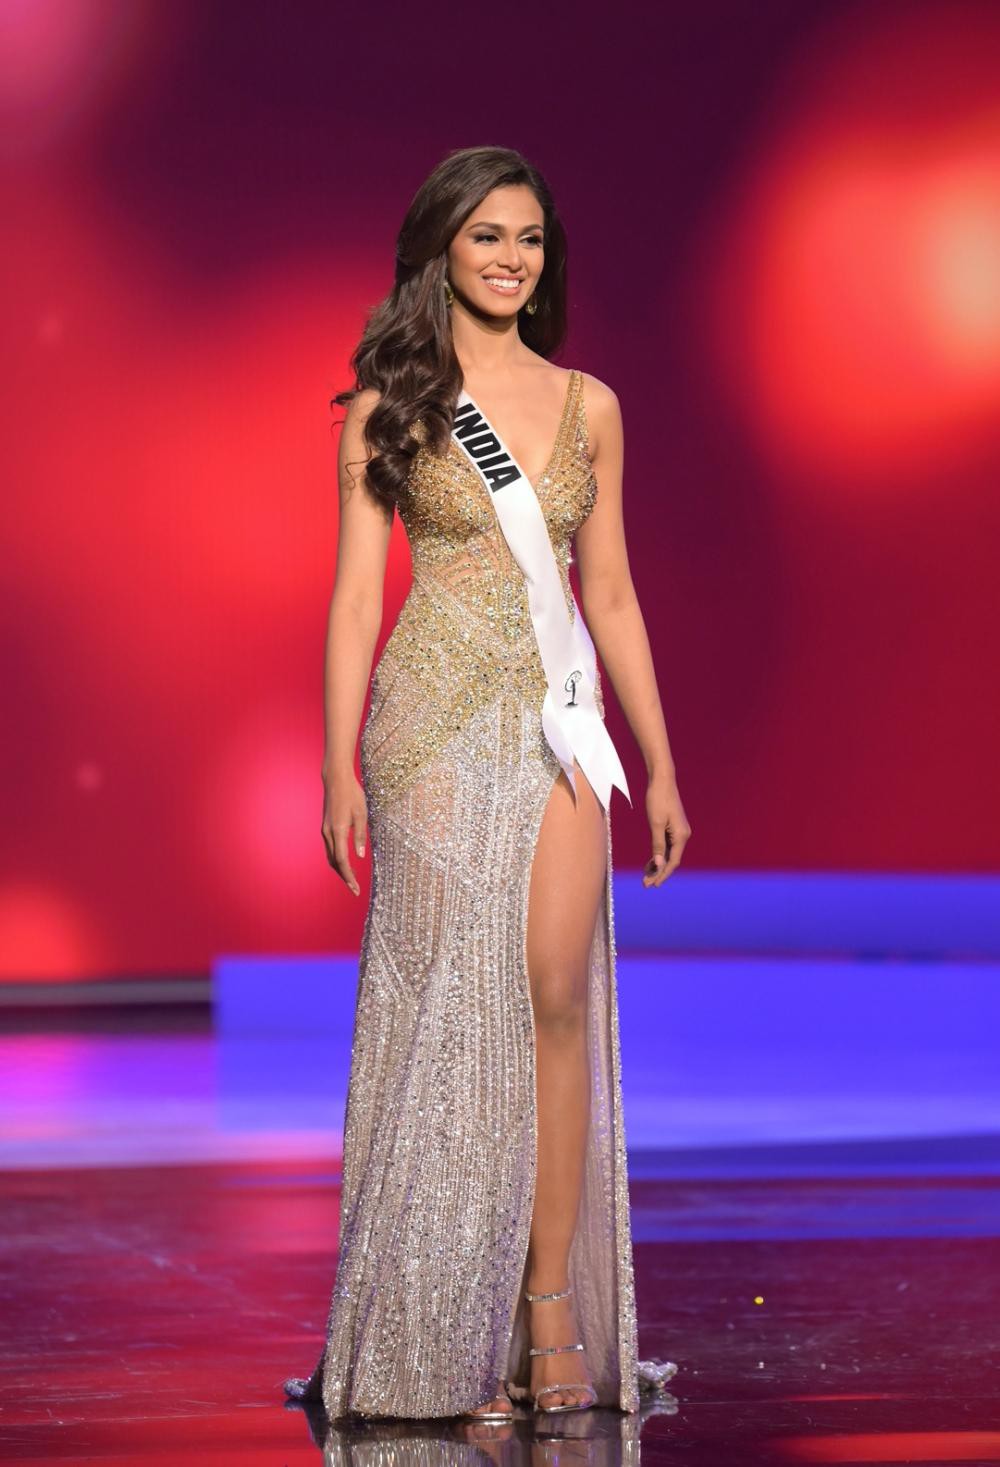 Hoa hậu Ấn Độ Adline Castelino đứng ở vị trí thứ 2. Đây là ứng cử viên luôn được trang Missosology ưu ái cho vị trí Miss Universe năm nay